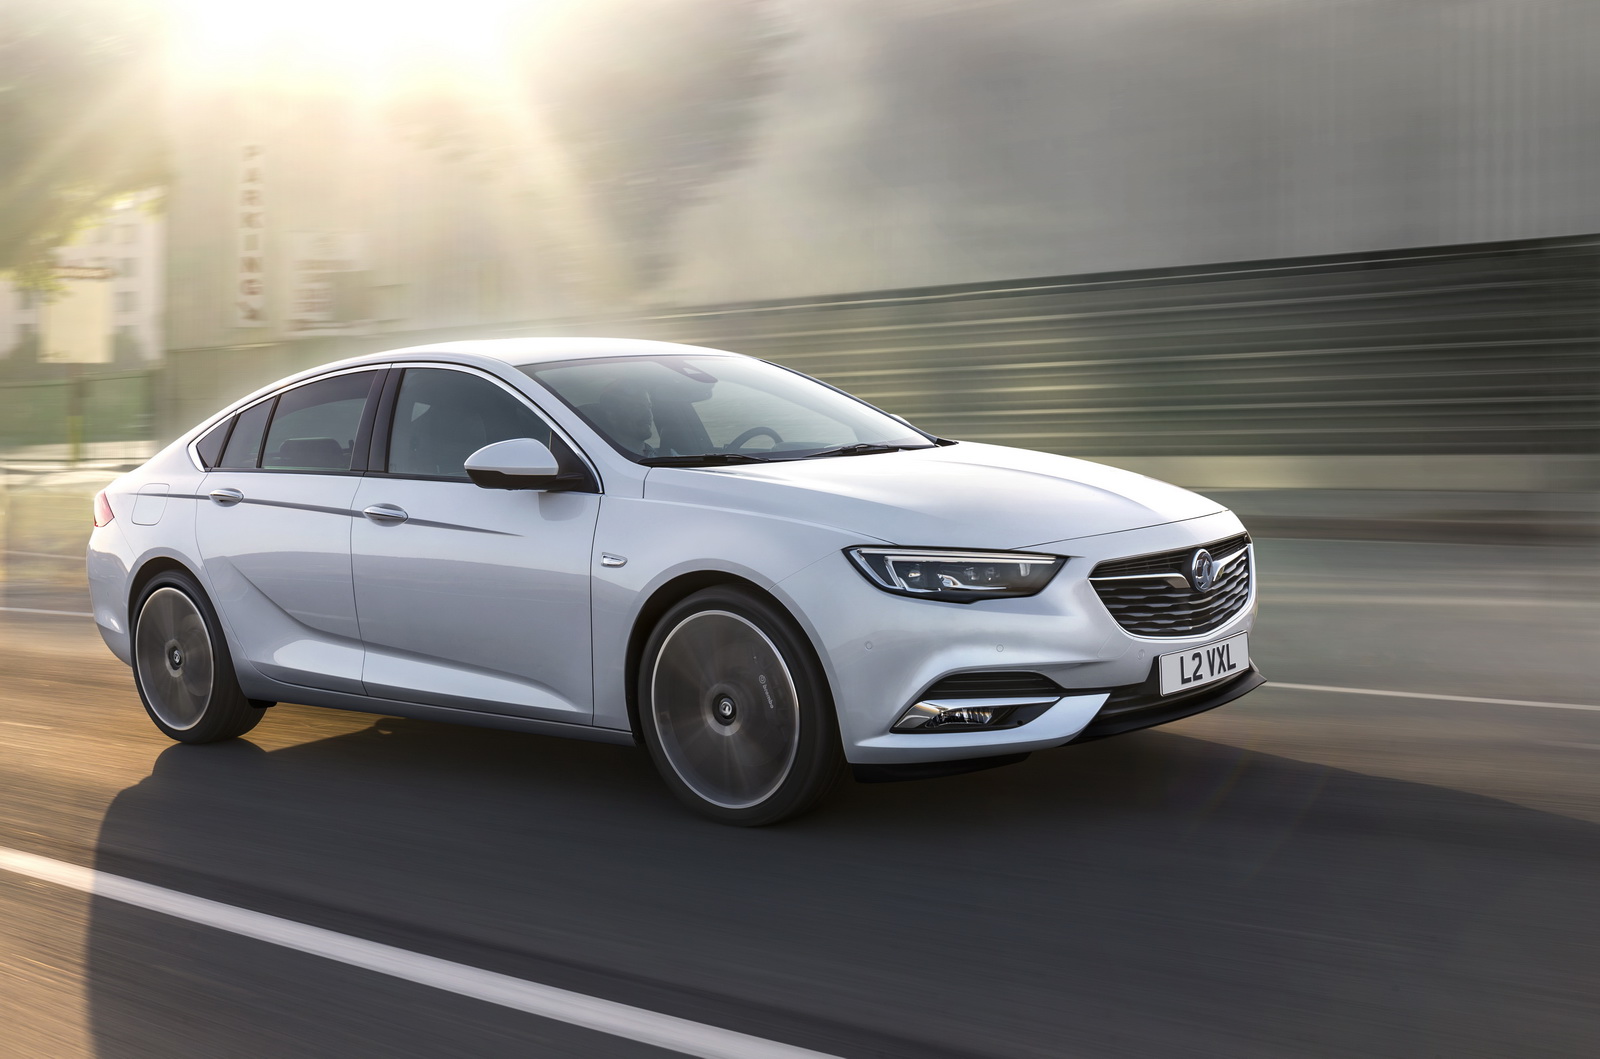 Opel Insignia Grand Sport 2018, el rey de los viajes largos